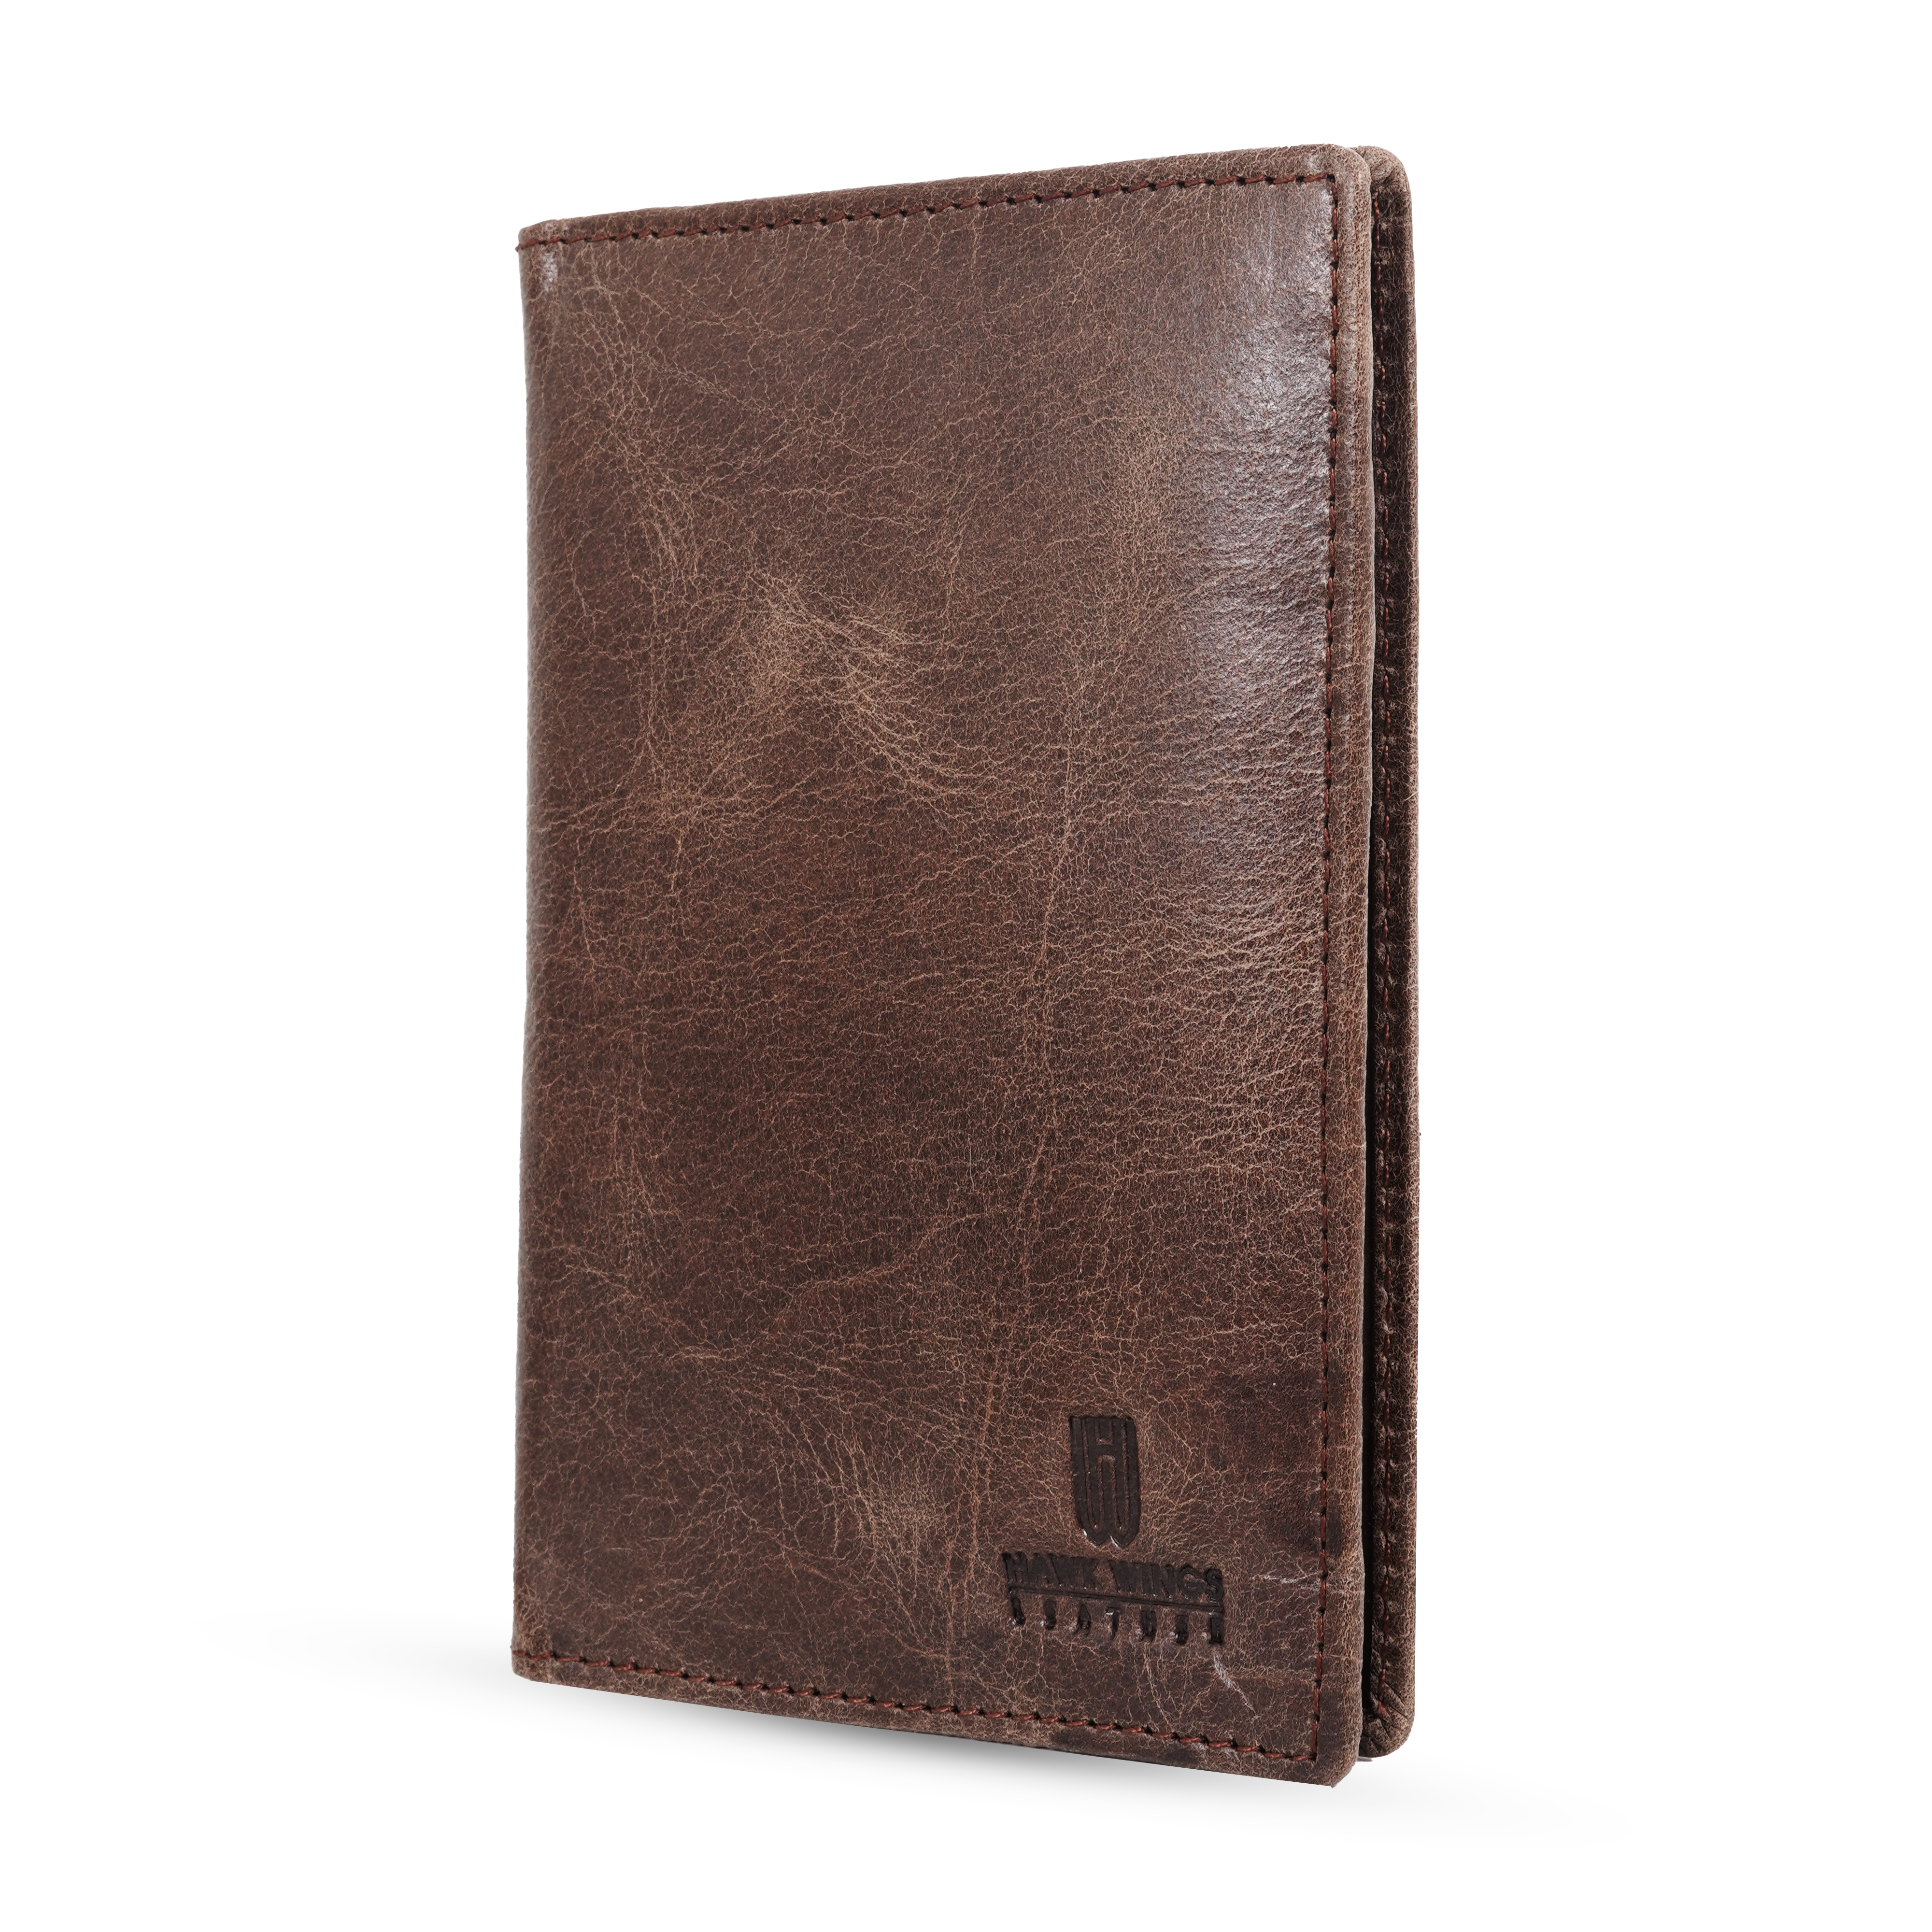 Genuine Leather  Card Holder||Travel Passport Holder||Travel Document Holder||Passport Cover For Men&Women ( BROWN)-asset-602